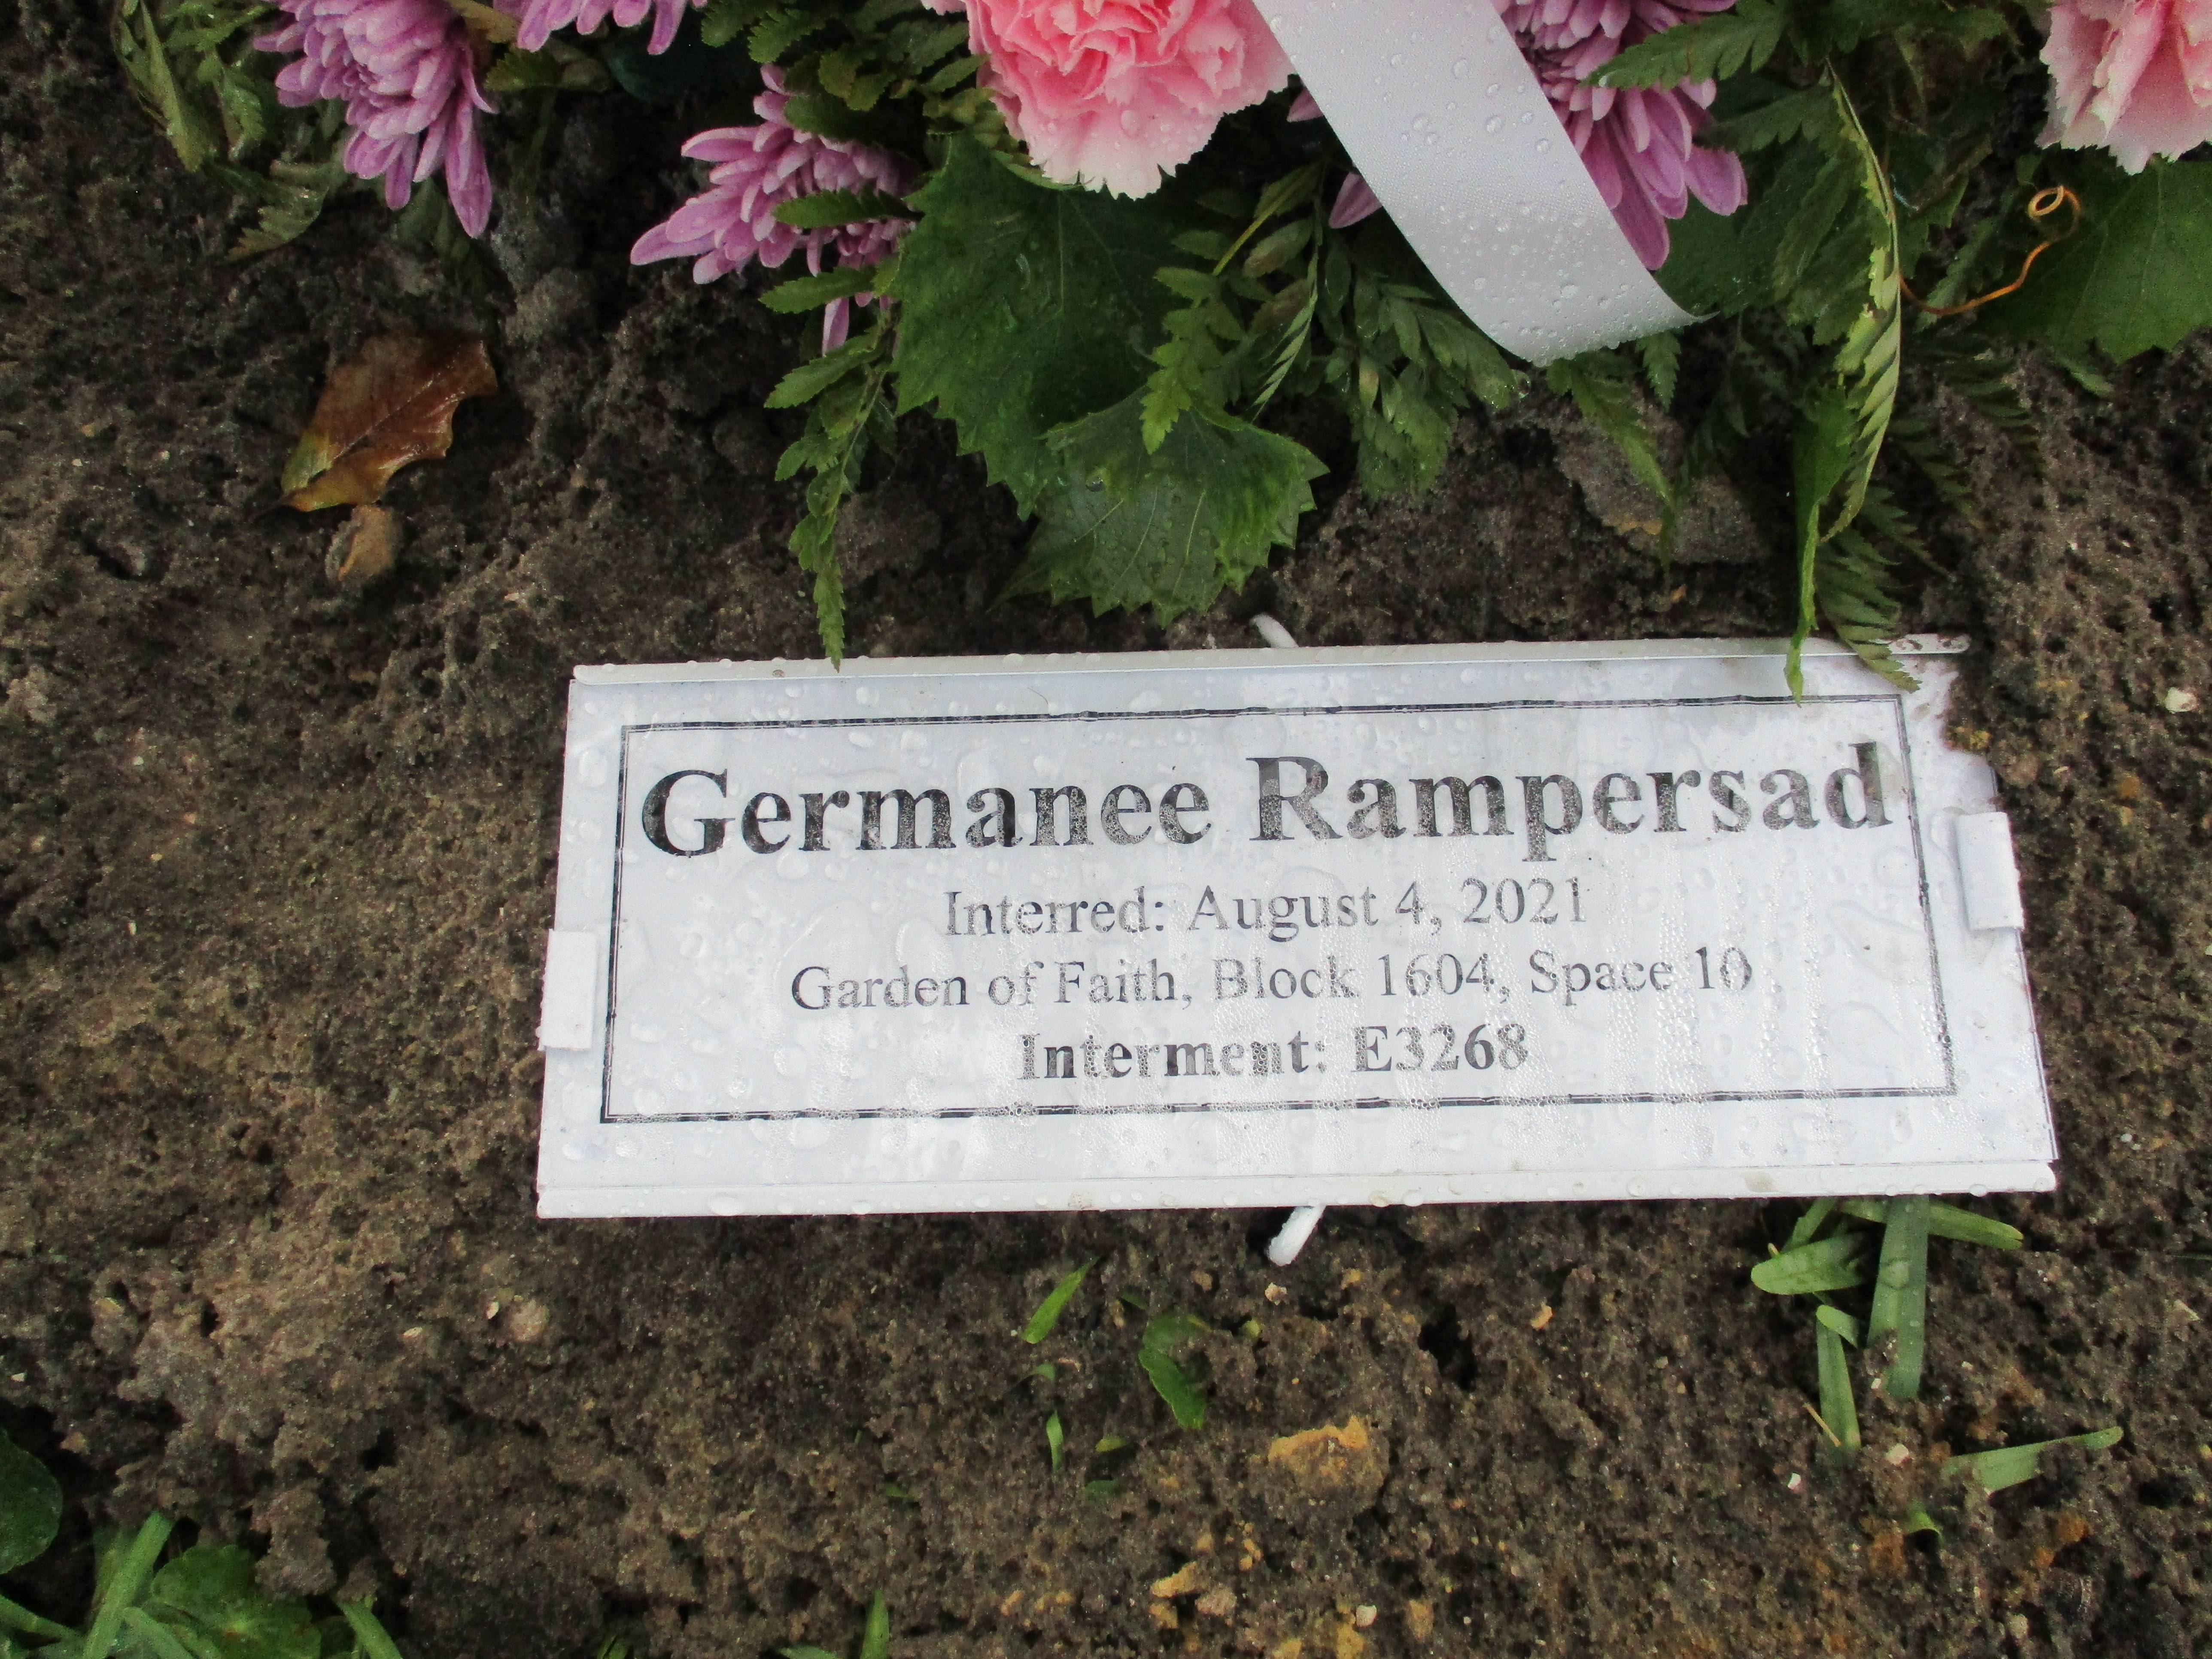 Germanee Rampersad